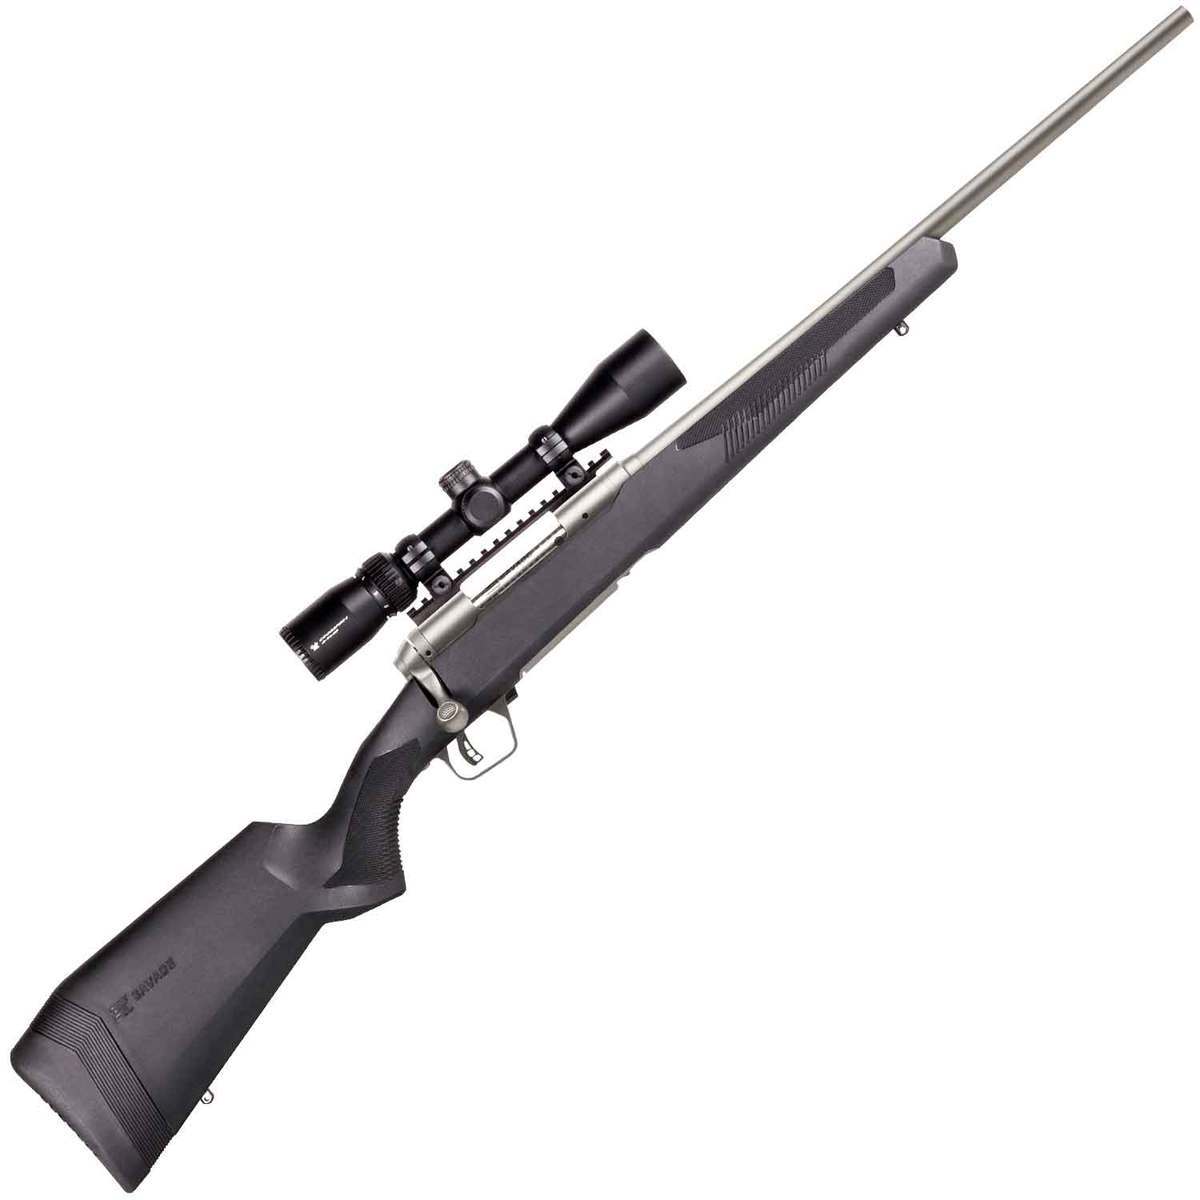 https://www.sportsmans.com/medias/savage-arms-110-apex-storm-xp-with-vortex-crossfire-ii-scope-stainless-bolt-action-rifle-223-remington-1541367-1.jpg?context=bWFzdGVyfGltYWdlc3w0MTY4NXxpbWFnZS9qcGVnfGltYWdlcy9oZjEvaDUyLzk3NDkwODI4MzI5MjYuanBnfDQyM2E3YThkZDYzNDFjMmZhYmFiOGVmMGQ4MWU5MDZiNGY0ZWYyOGJlZjQ0OWY4MzA2OTAxNDFmMzk3MWEyNmY